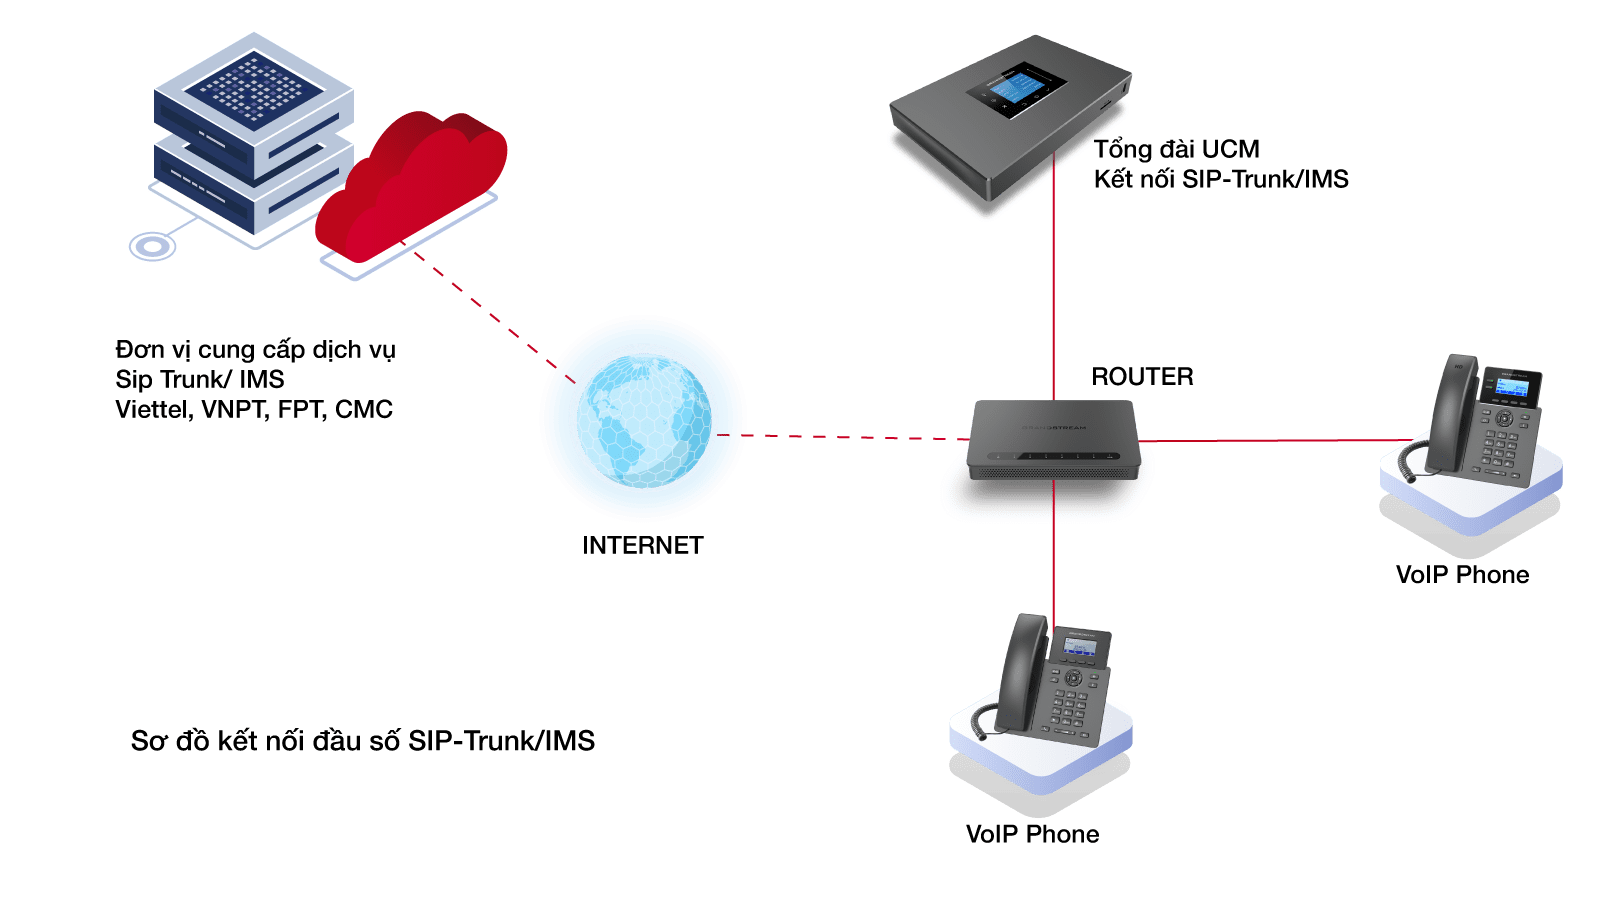 Sơ đồ kết nối đầu số SIP-Trunk/ IMS với tổng đài VoiP 